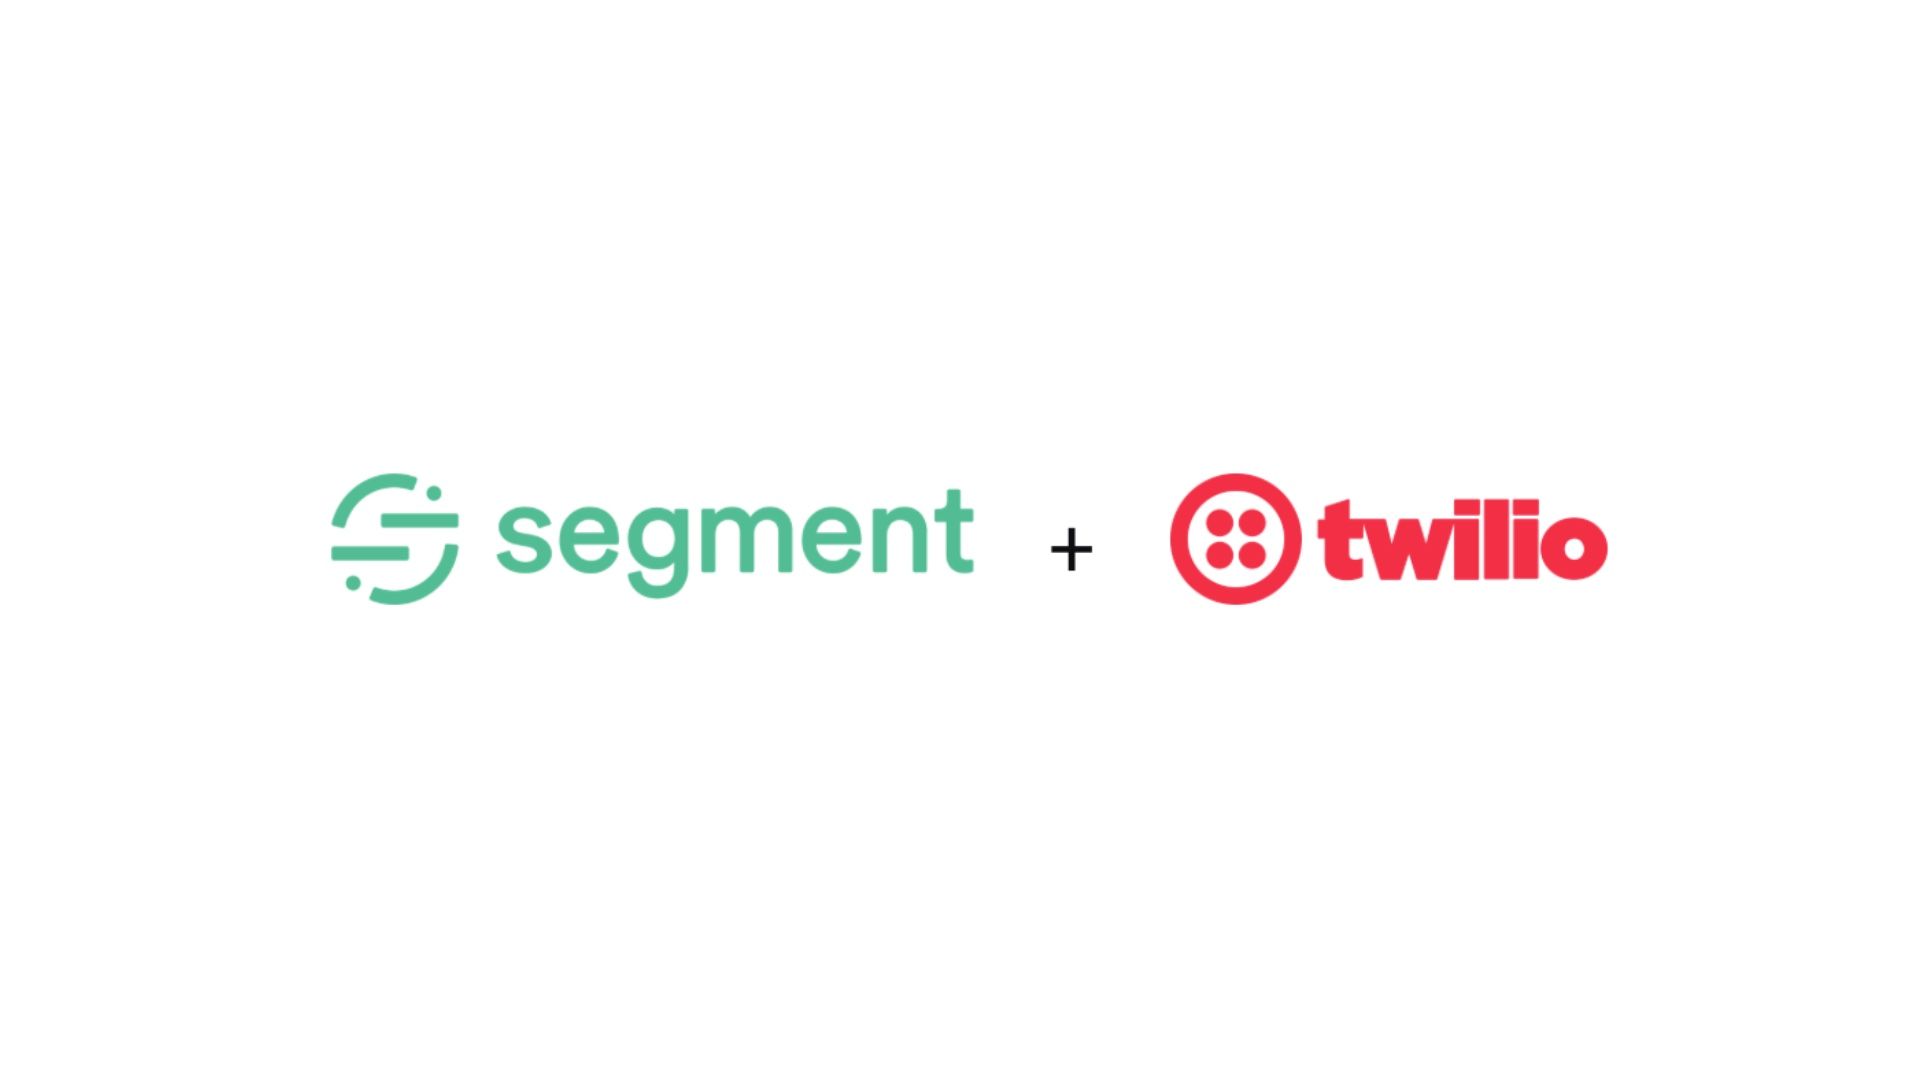 Twilio to acquire Segment for $3.2 billion